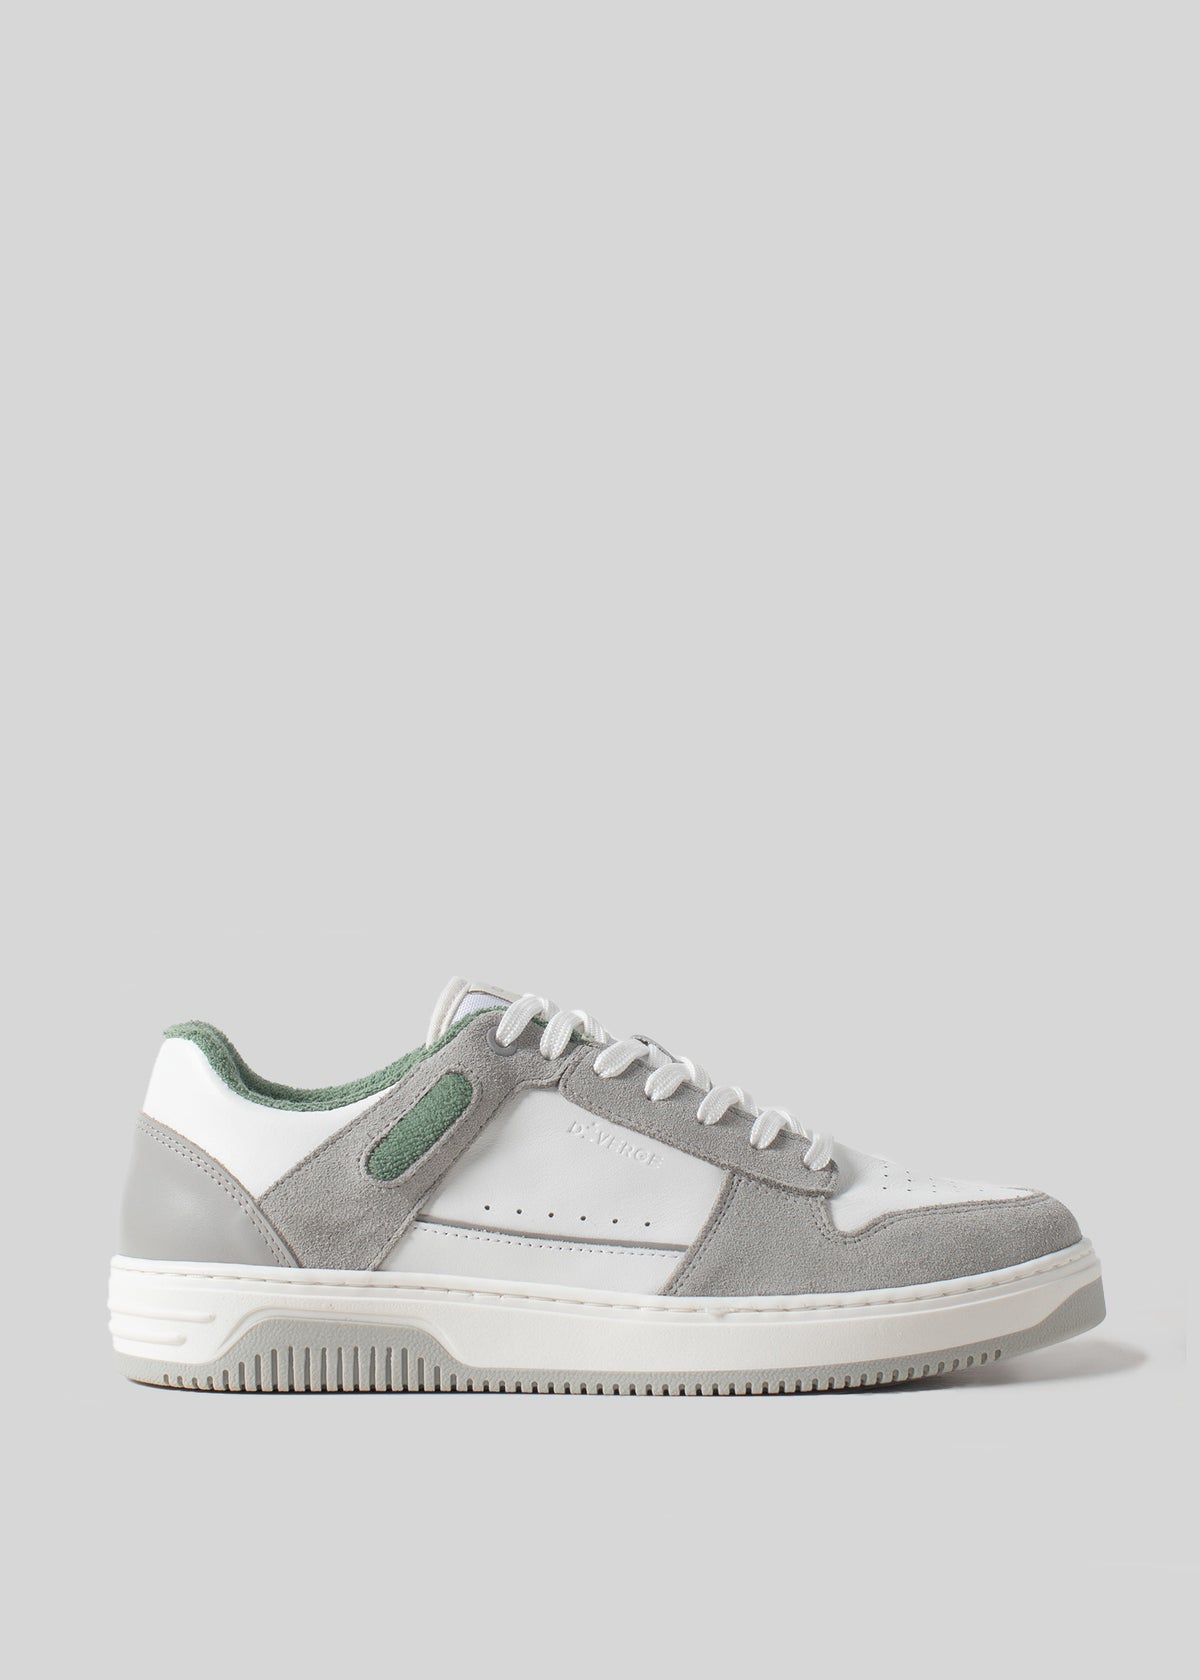 Una singola sneaker low-top V2 Grey W/ Forest Green visualizzata su uno sfondo grigio chiaro.